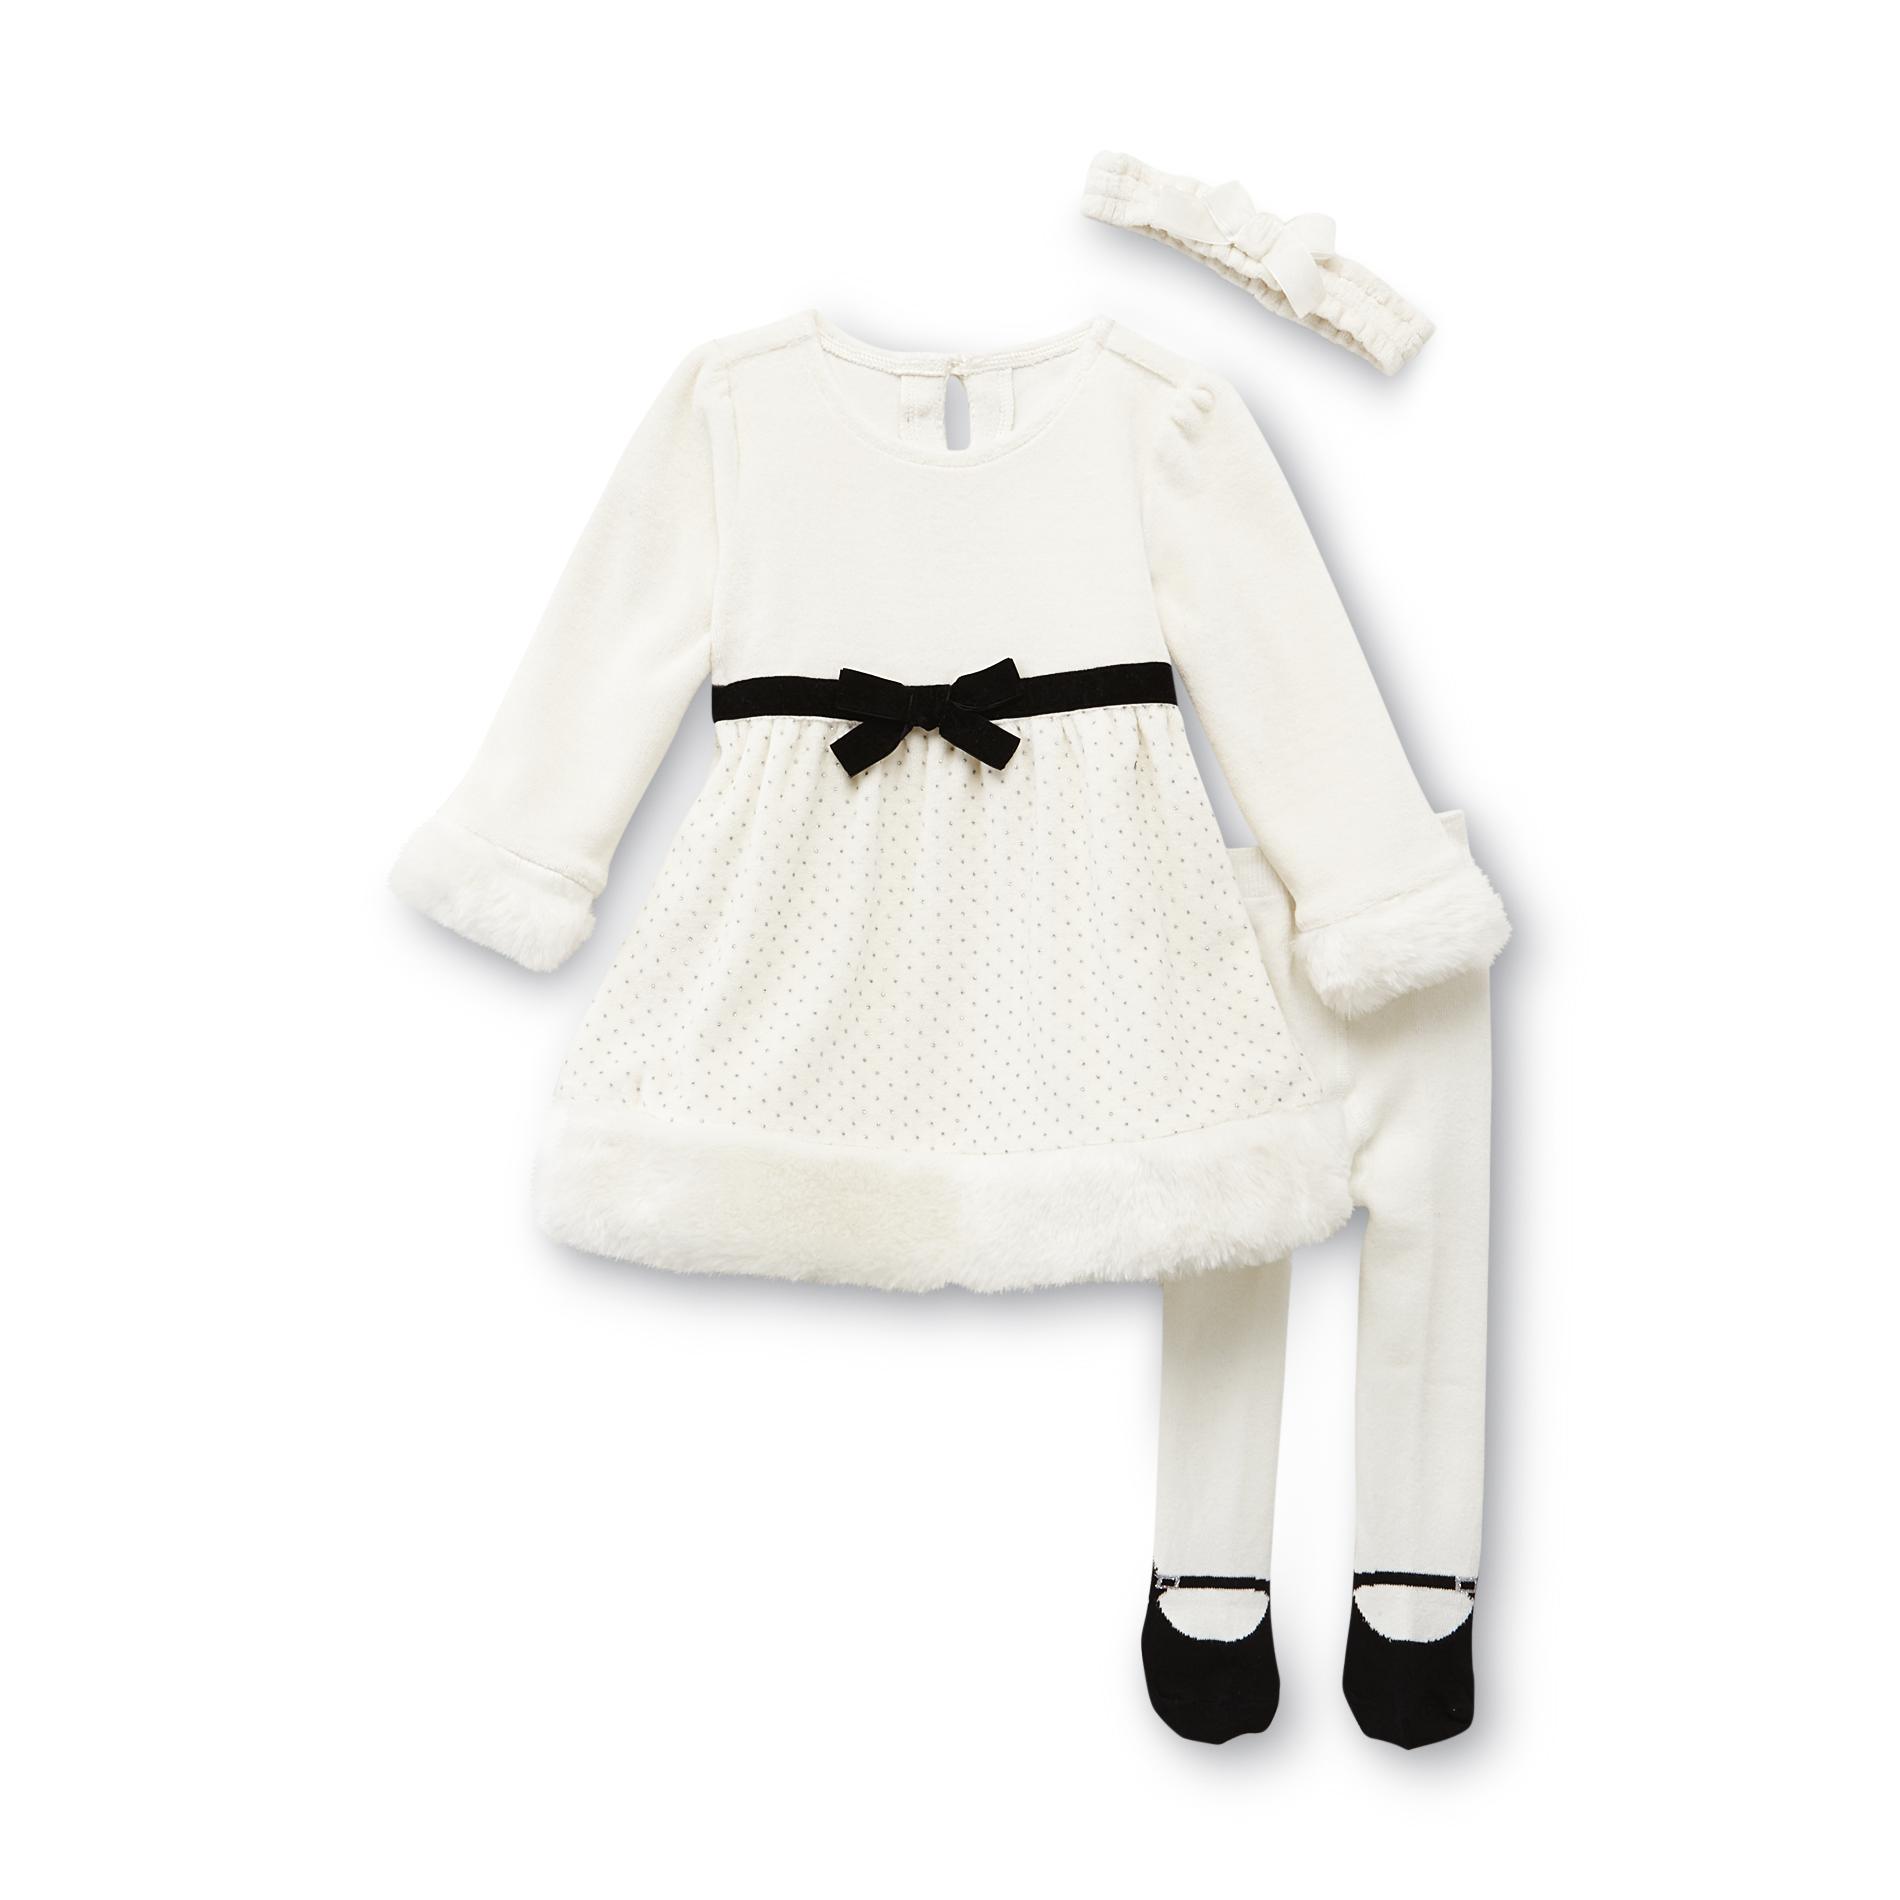 Small Wonders Newborn Girl's Dress  Tights & Headband - Santa